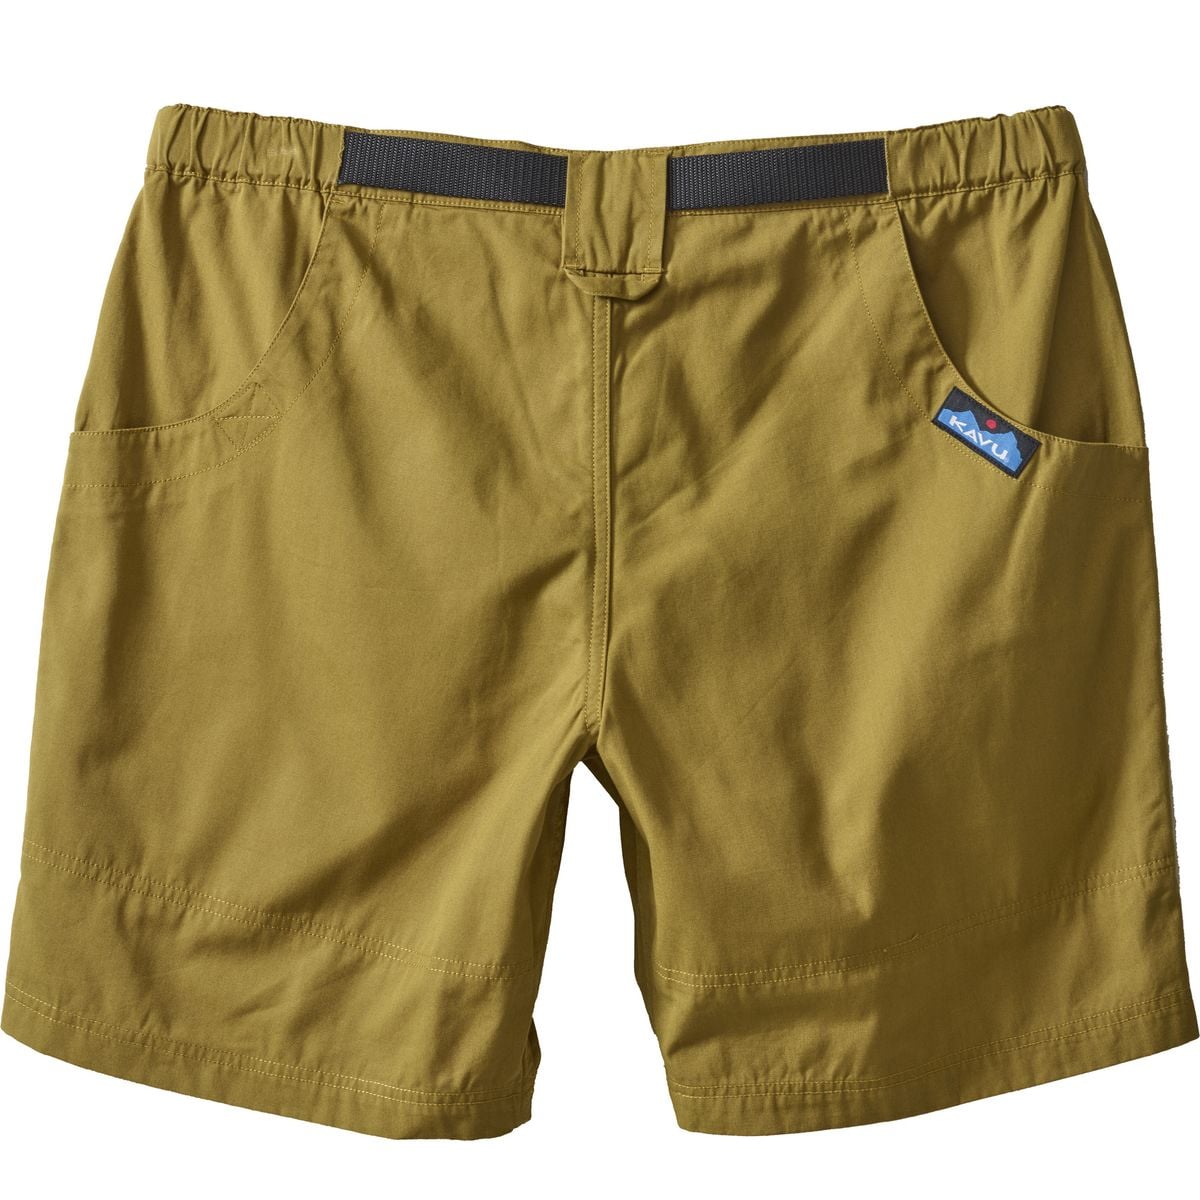 Kavu Chilli Lite Short - Men's | eBay